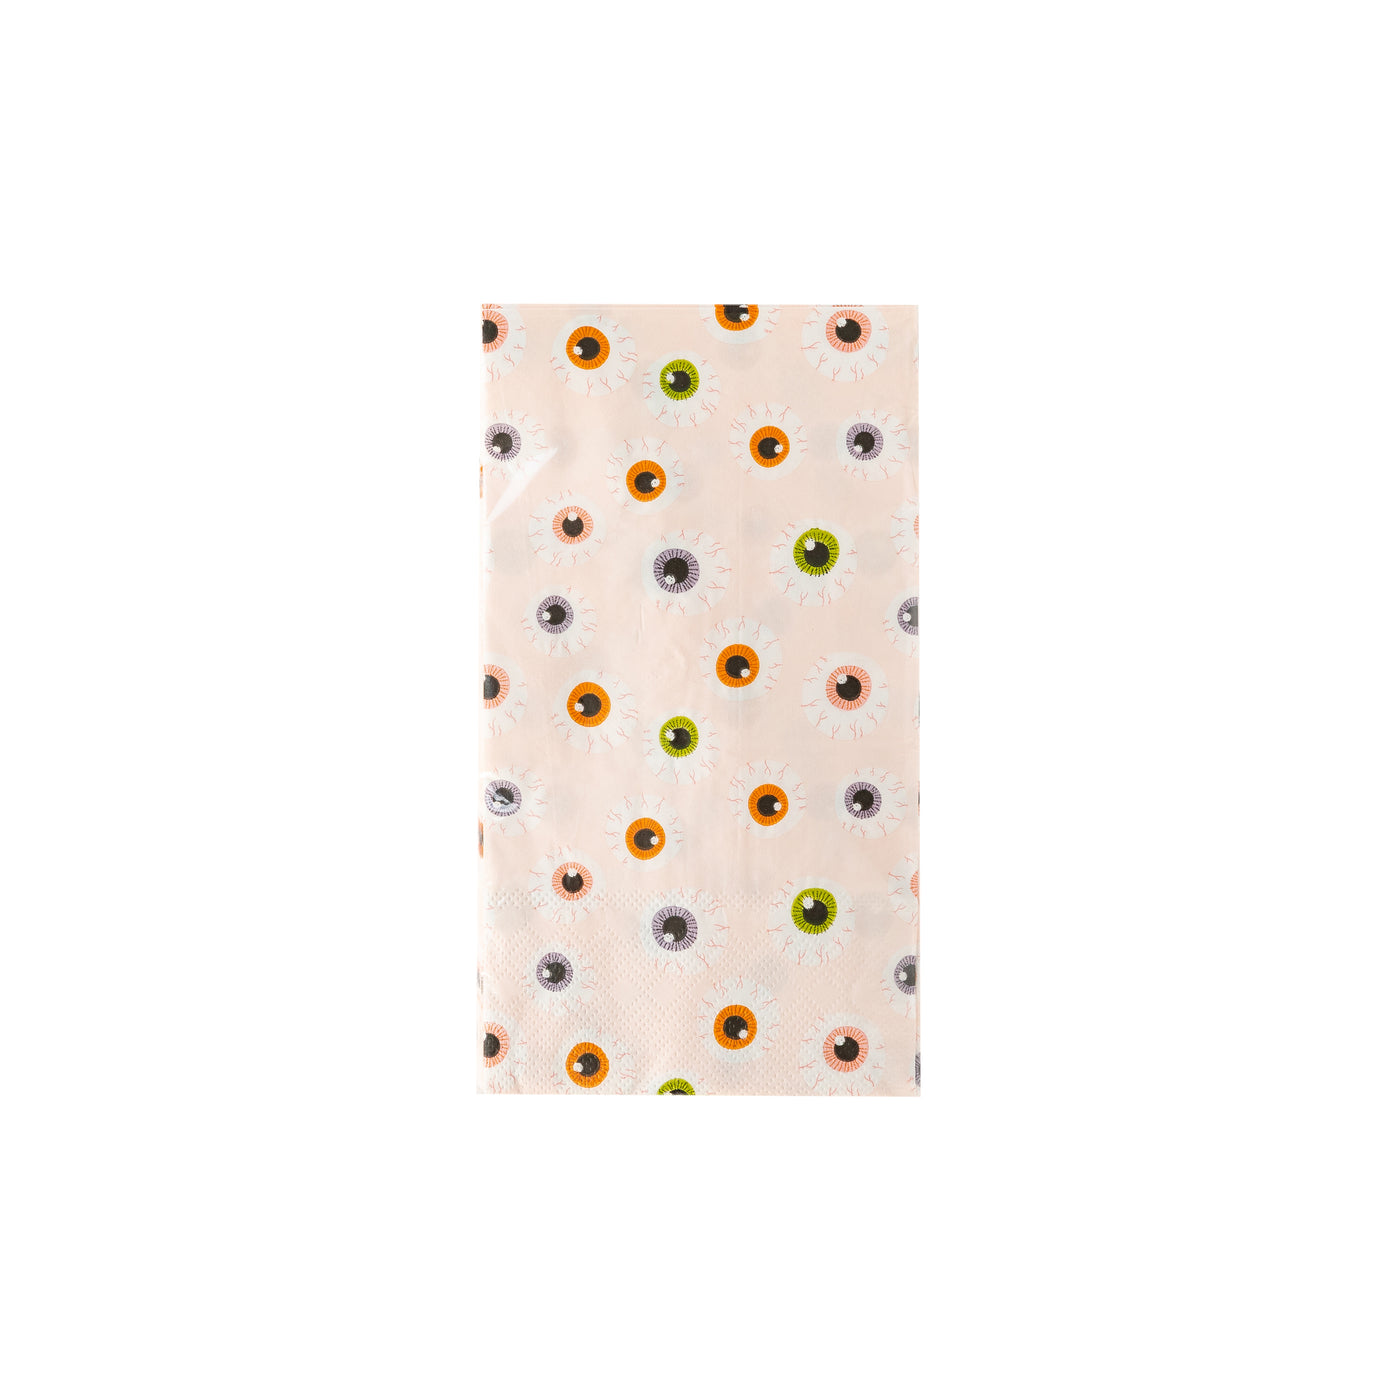 PLTS336L - Eyeballs Paper Guest Towel Napkin